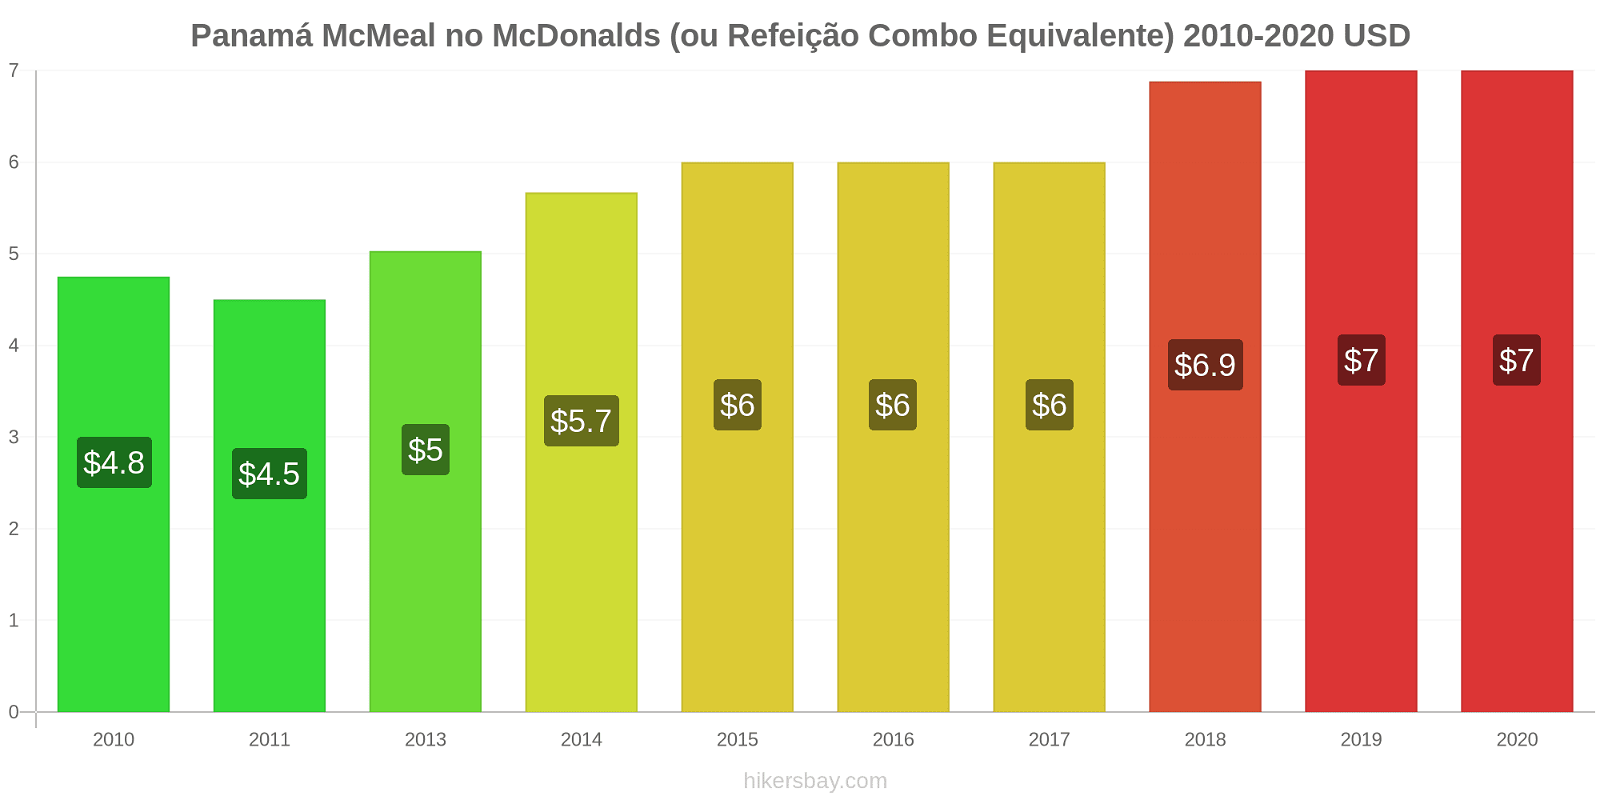 Panamá variação de preço McMeal no McDonald ' s (ou refeição Combo equivalente) hikersbay.com